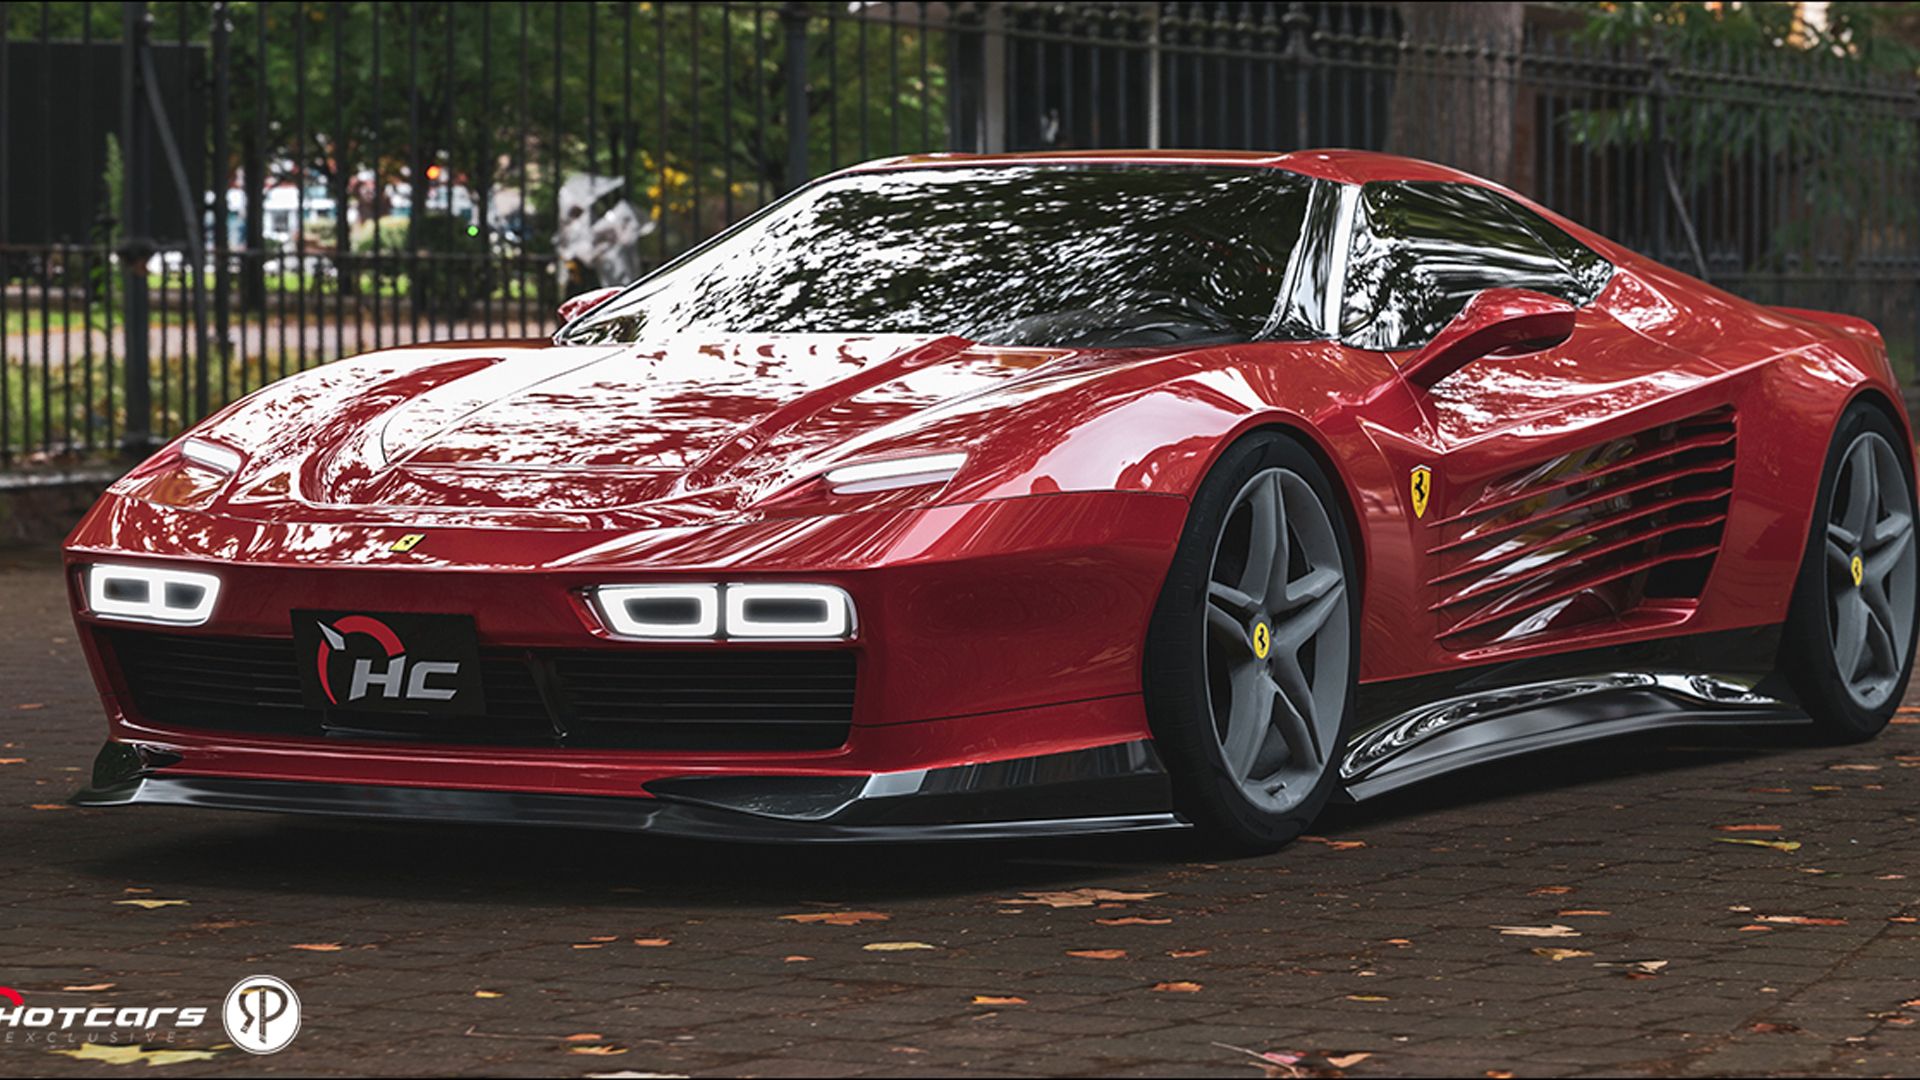 Ferrari Testarossa rendering